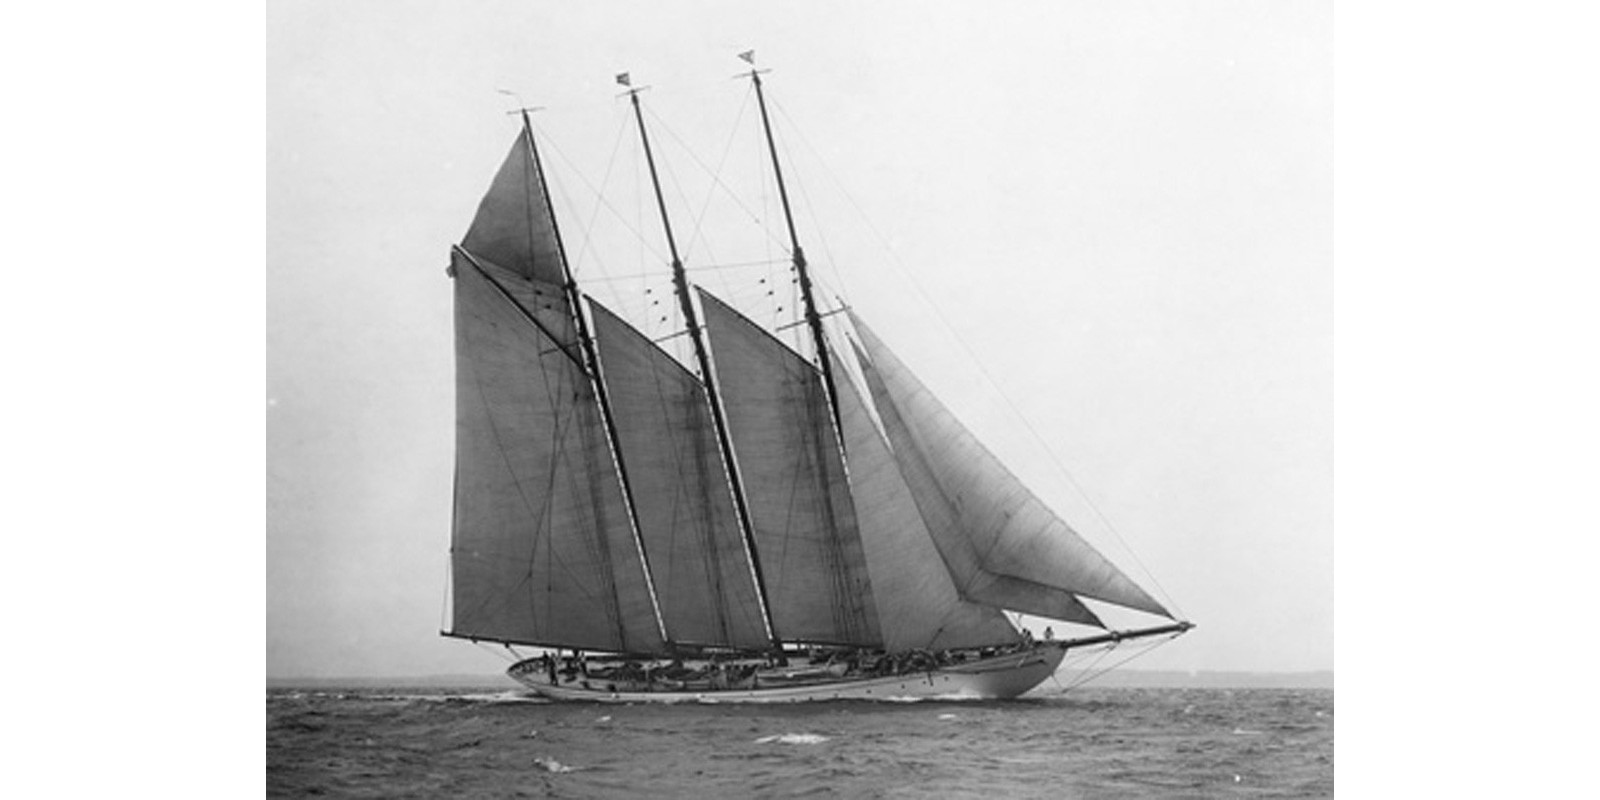 Edwin Levick - The Schooner Karina at Sail, 1919